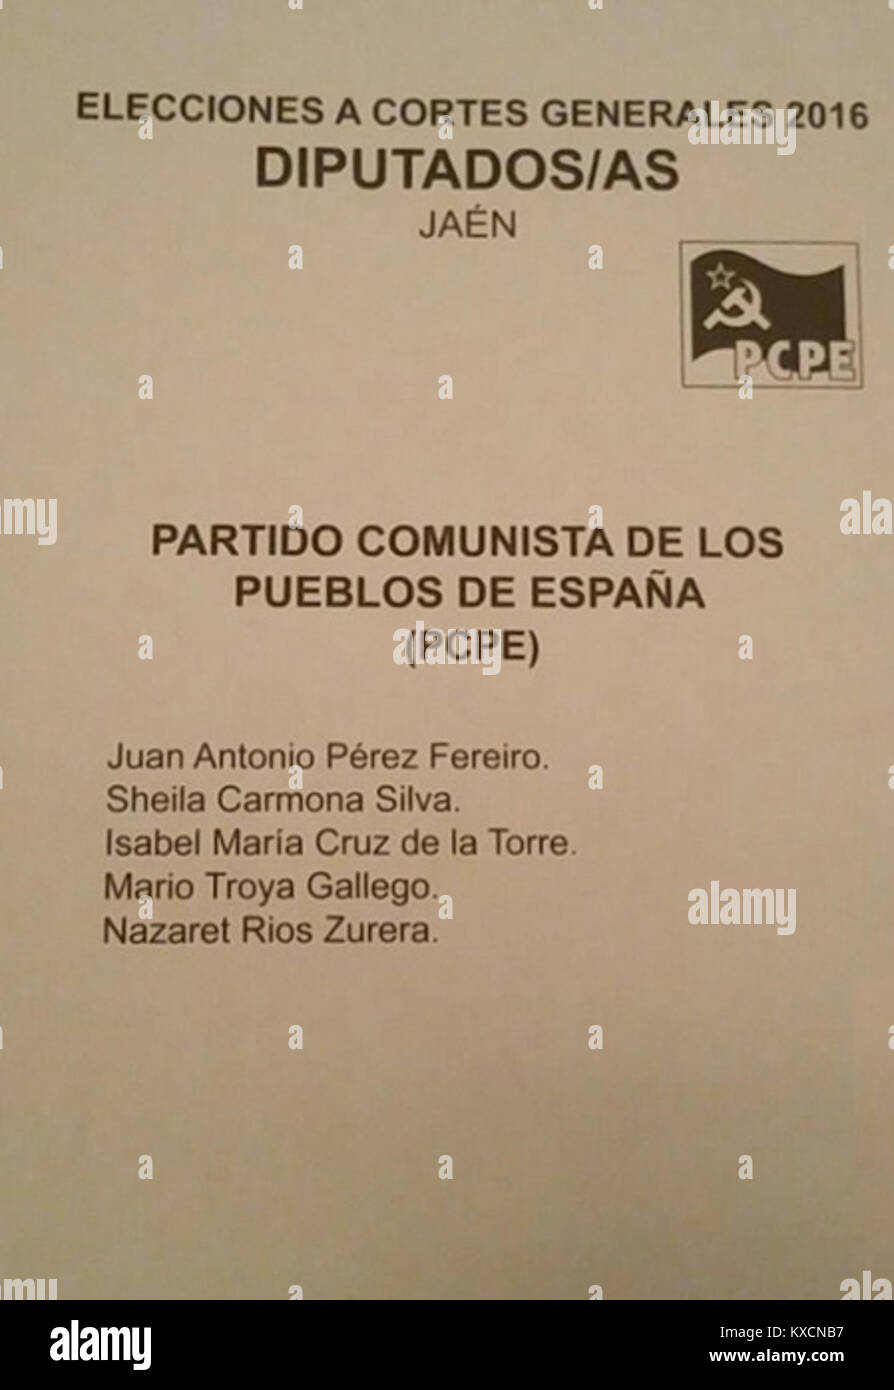 2016 Spanish General Elections Ballot - Jaén - Partido Comunista de los Pueblos de España (PCPE) Stock Photo